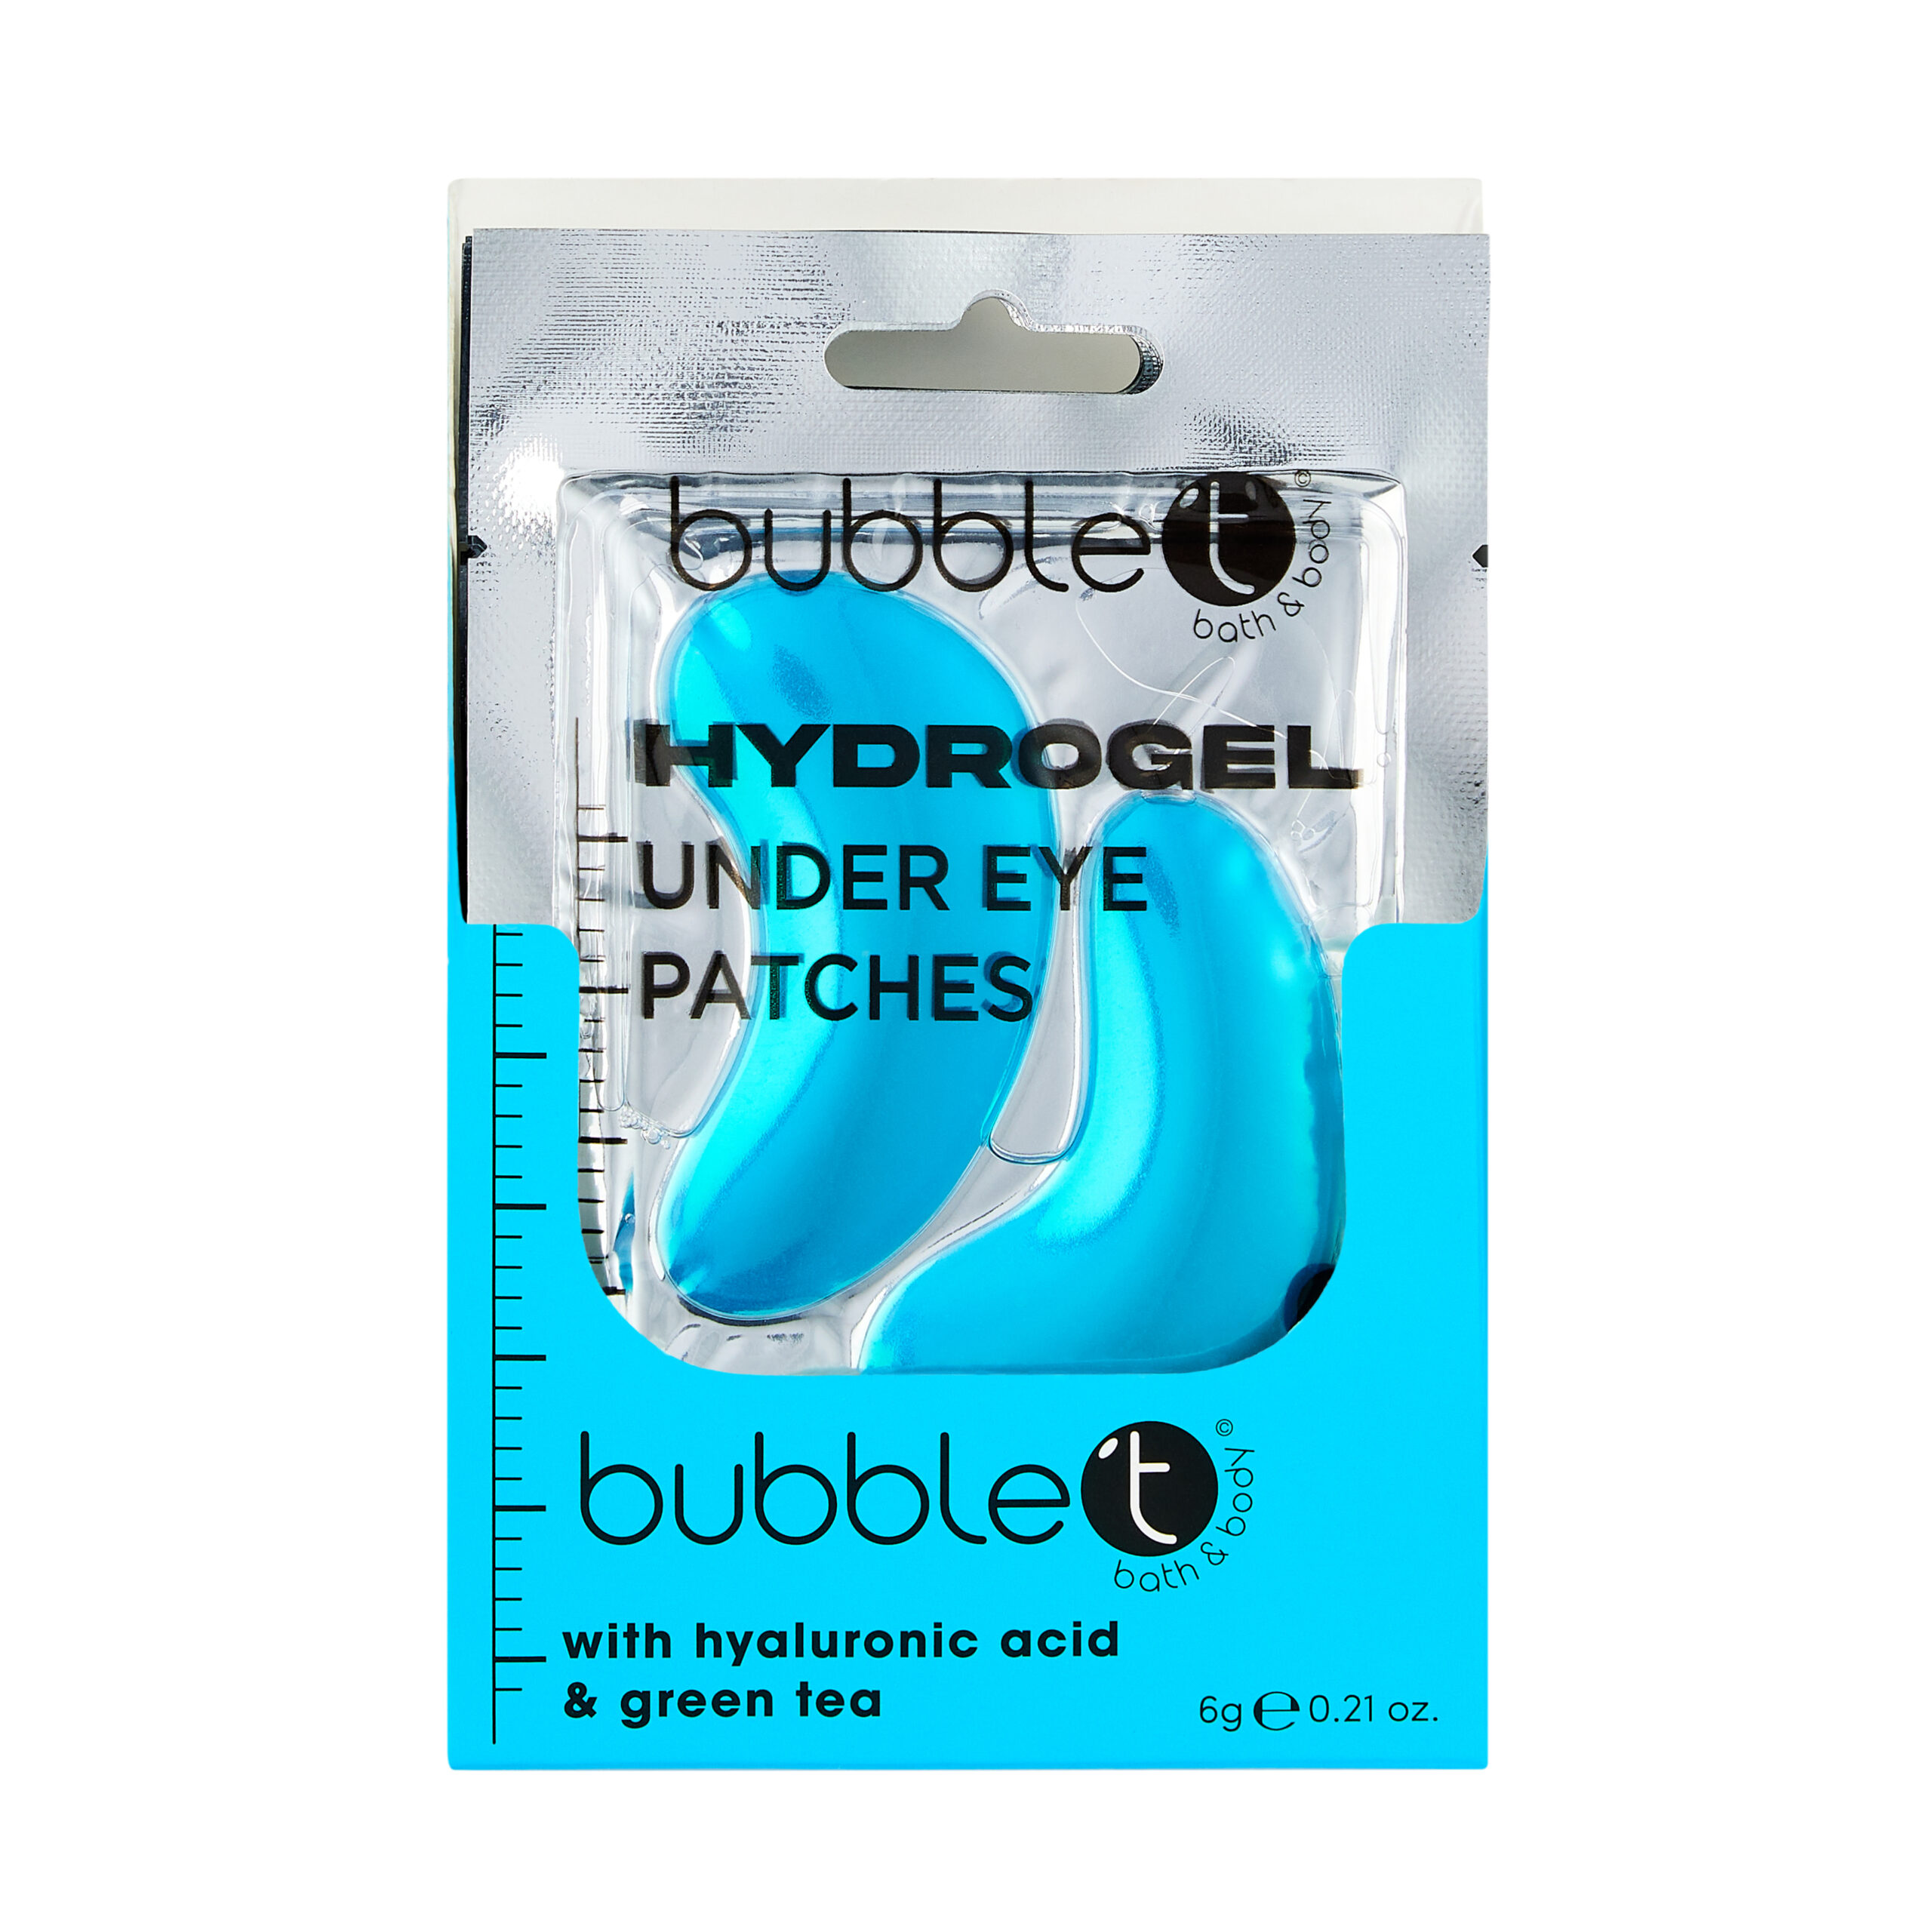 Bubble T Silmaaluste hüdrogeel silmapadjad hüaloroonhappe ja rohelise teega